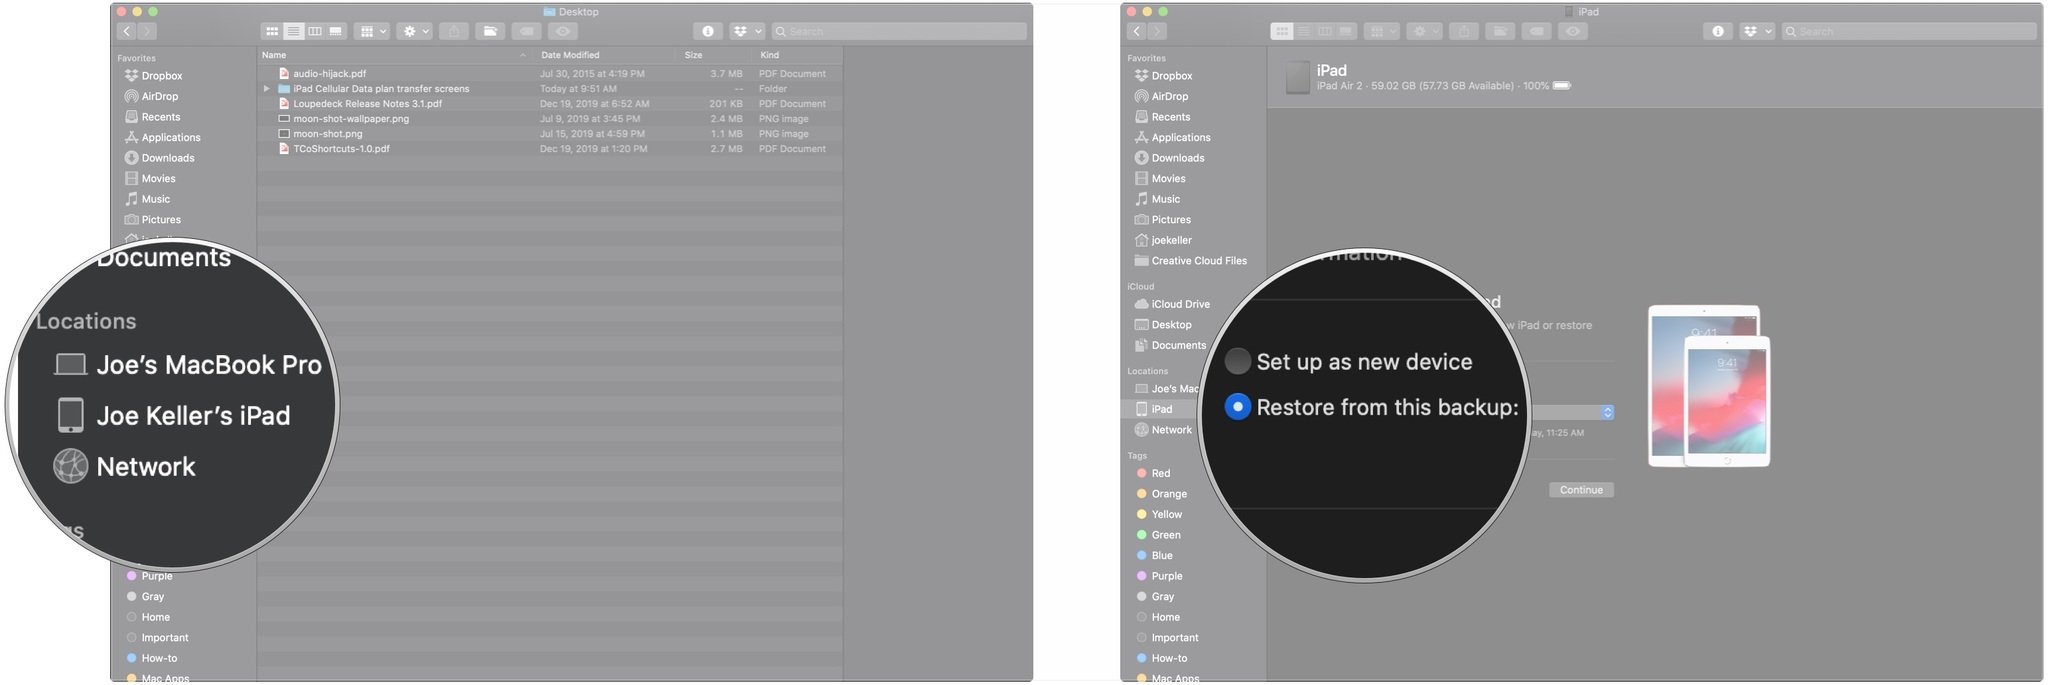 Transférez des données vers un nouvel iPad à l'aide de Mac pour restaurer en affichant les étapes : cliquez sur iPad, cliquez sur le bouton